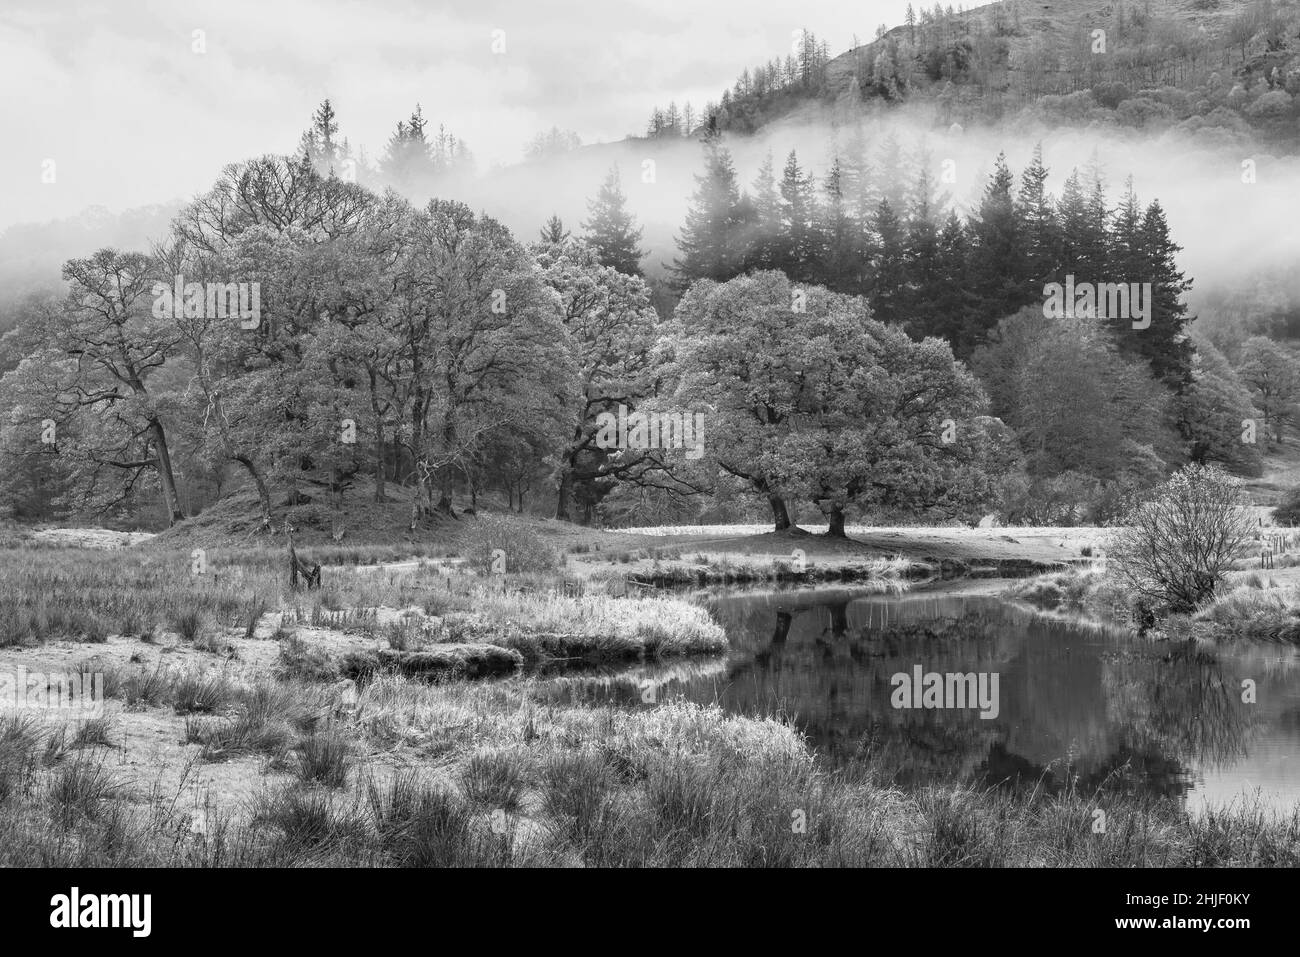 In bianco e nero Epic Autumn paesaggio immagine del fiume Brathay nel Lake District Lookng verso Langdale Pikes con nebbia attraverso il fiume e vibrante bosco Foto Stock